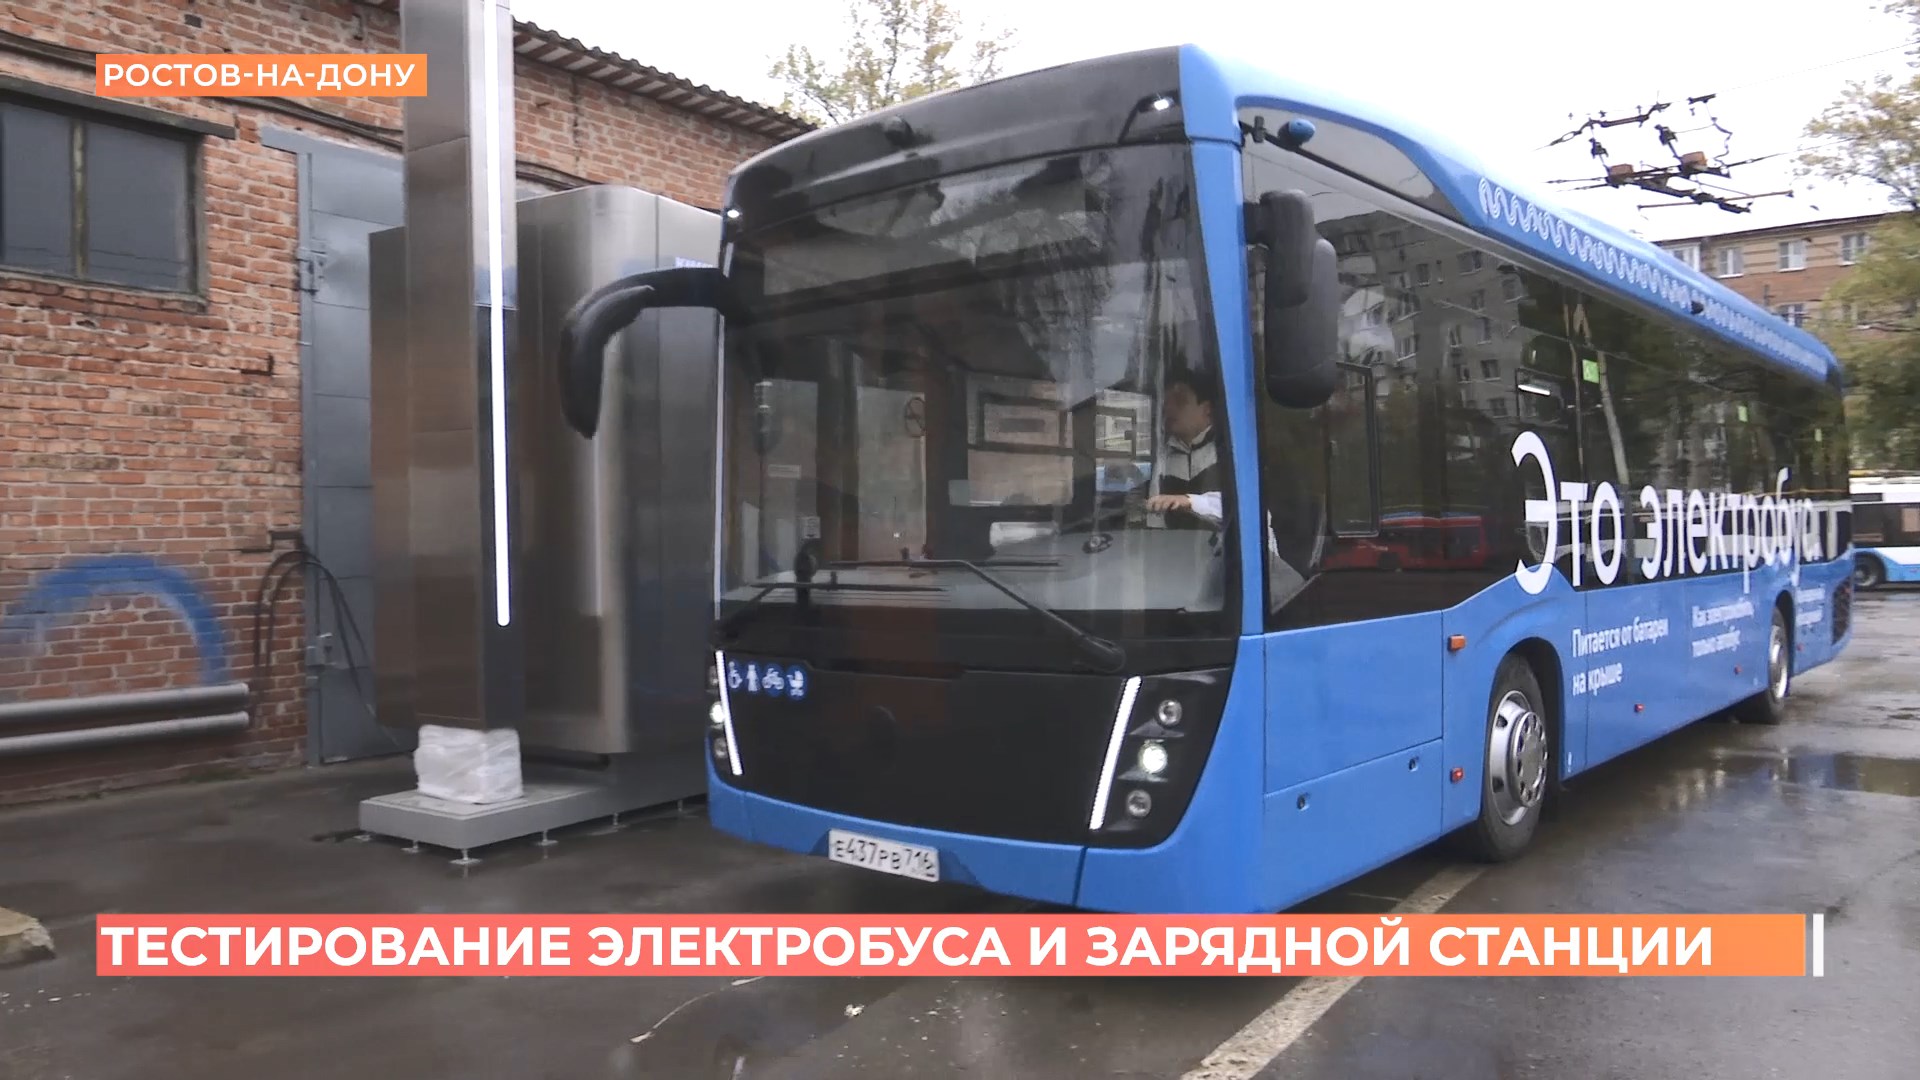 Электробус КАМАЗ начали тестировать в Ростове